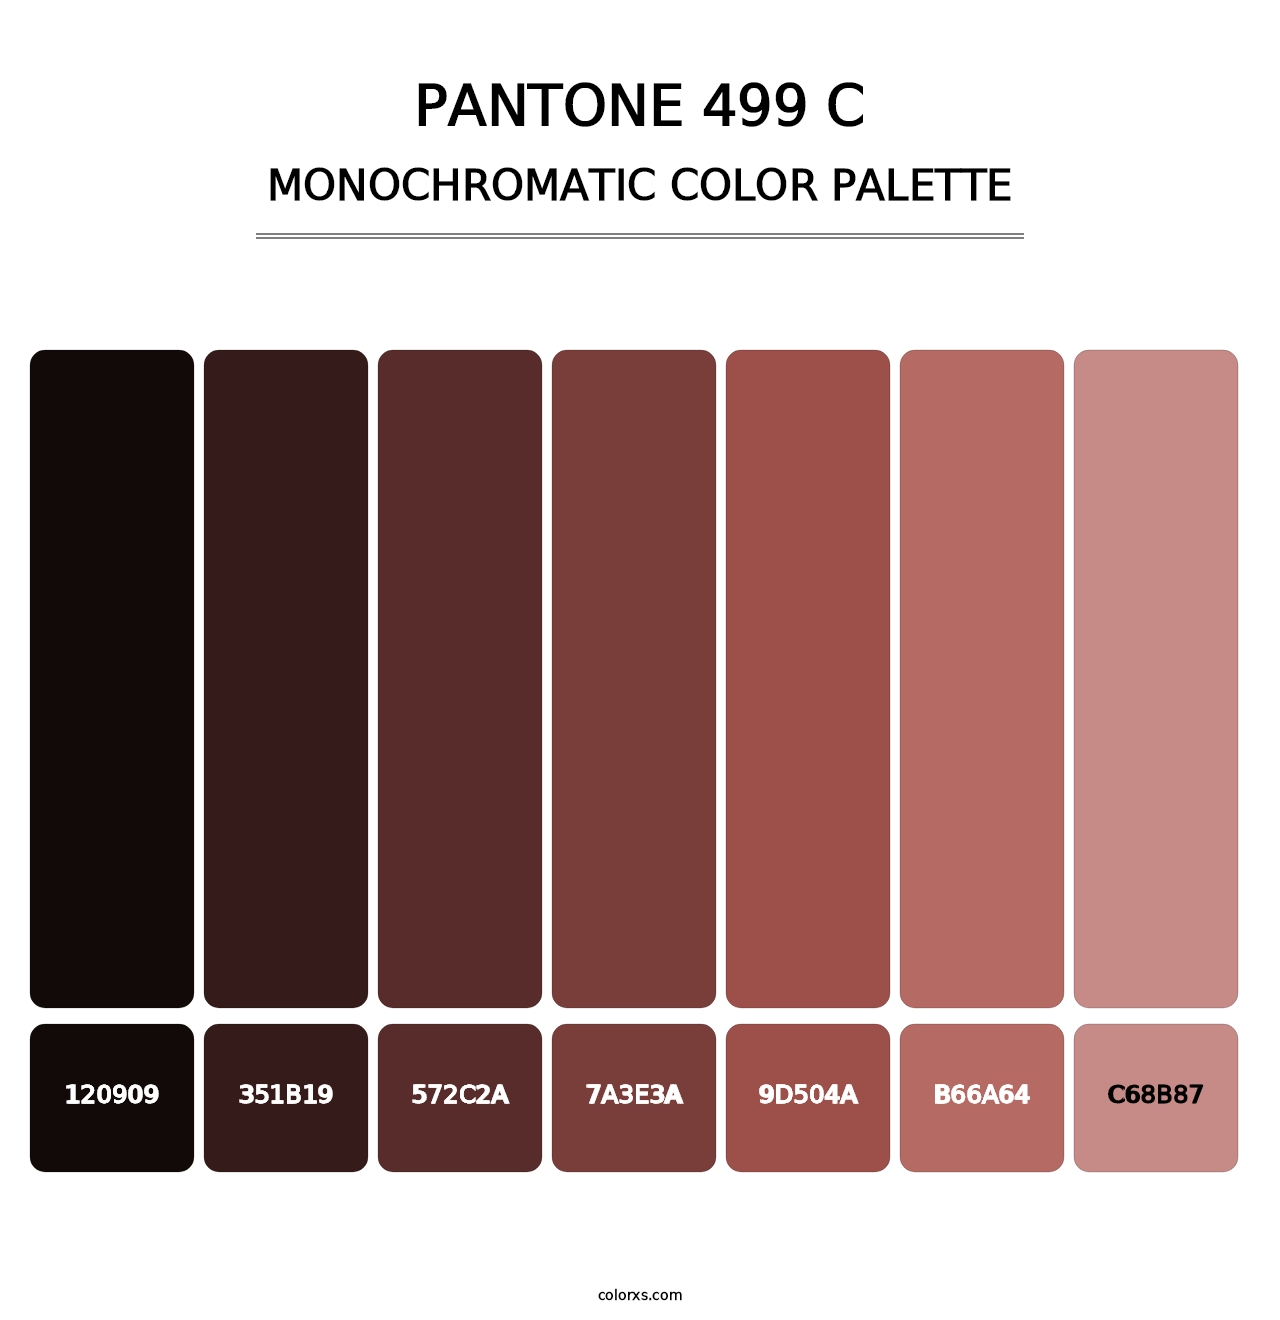 PANTONE 499 C - Monochromatic Color Palette